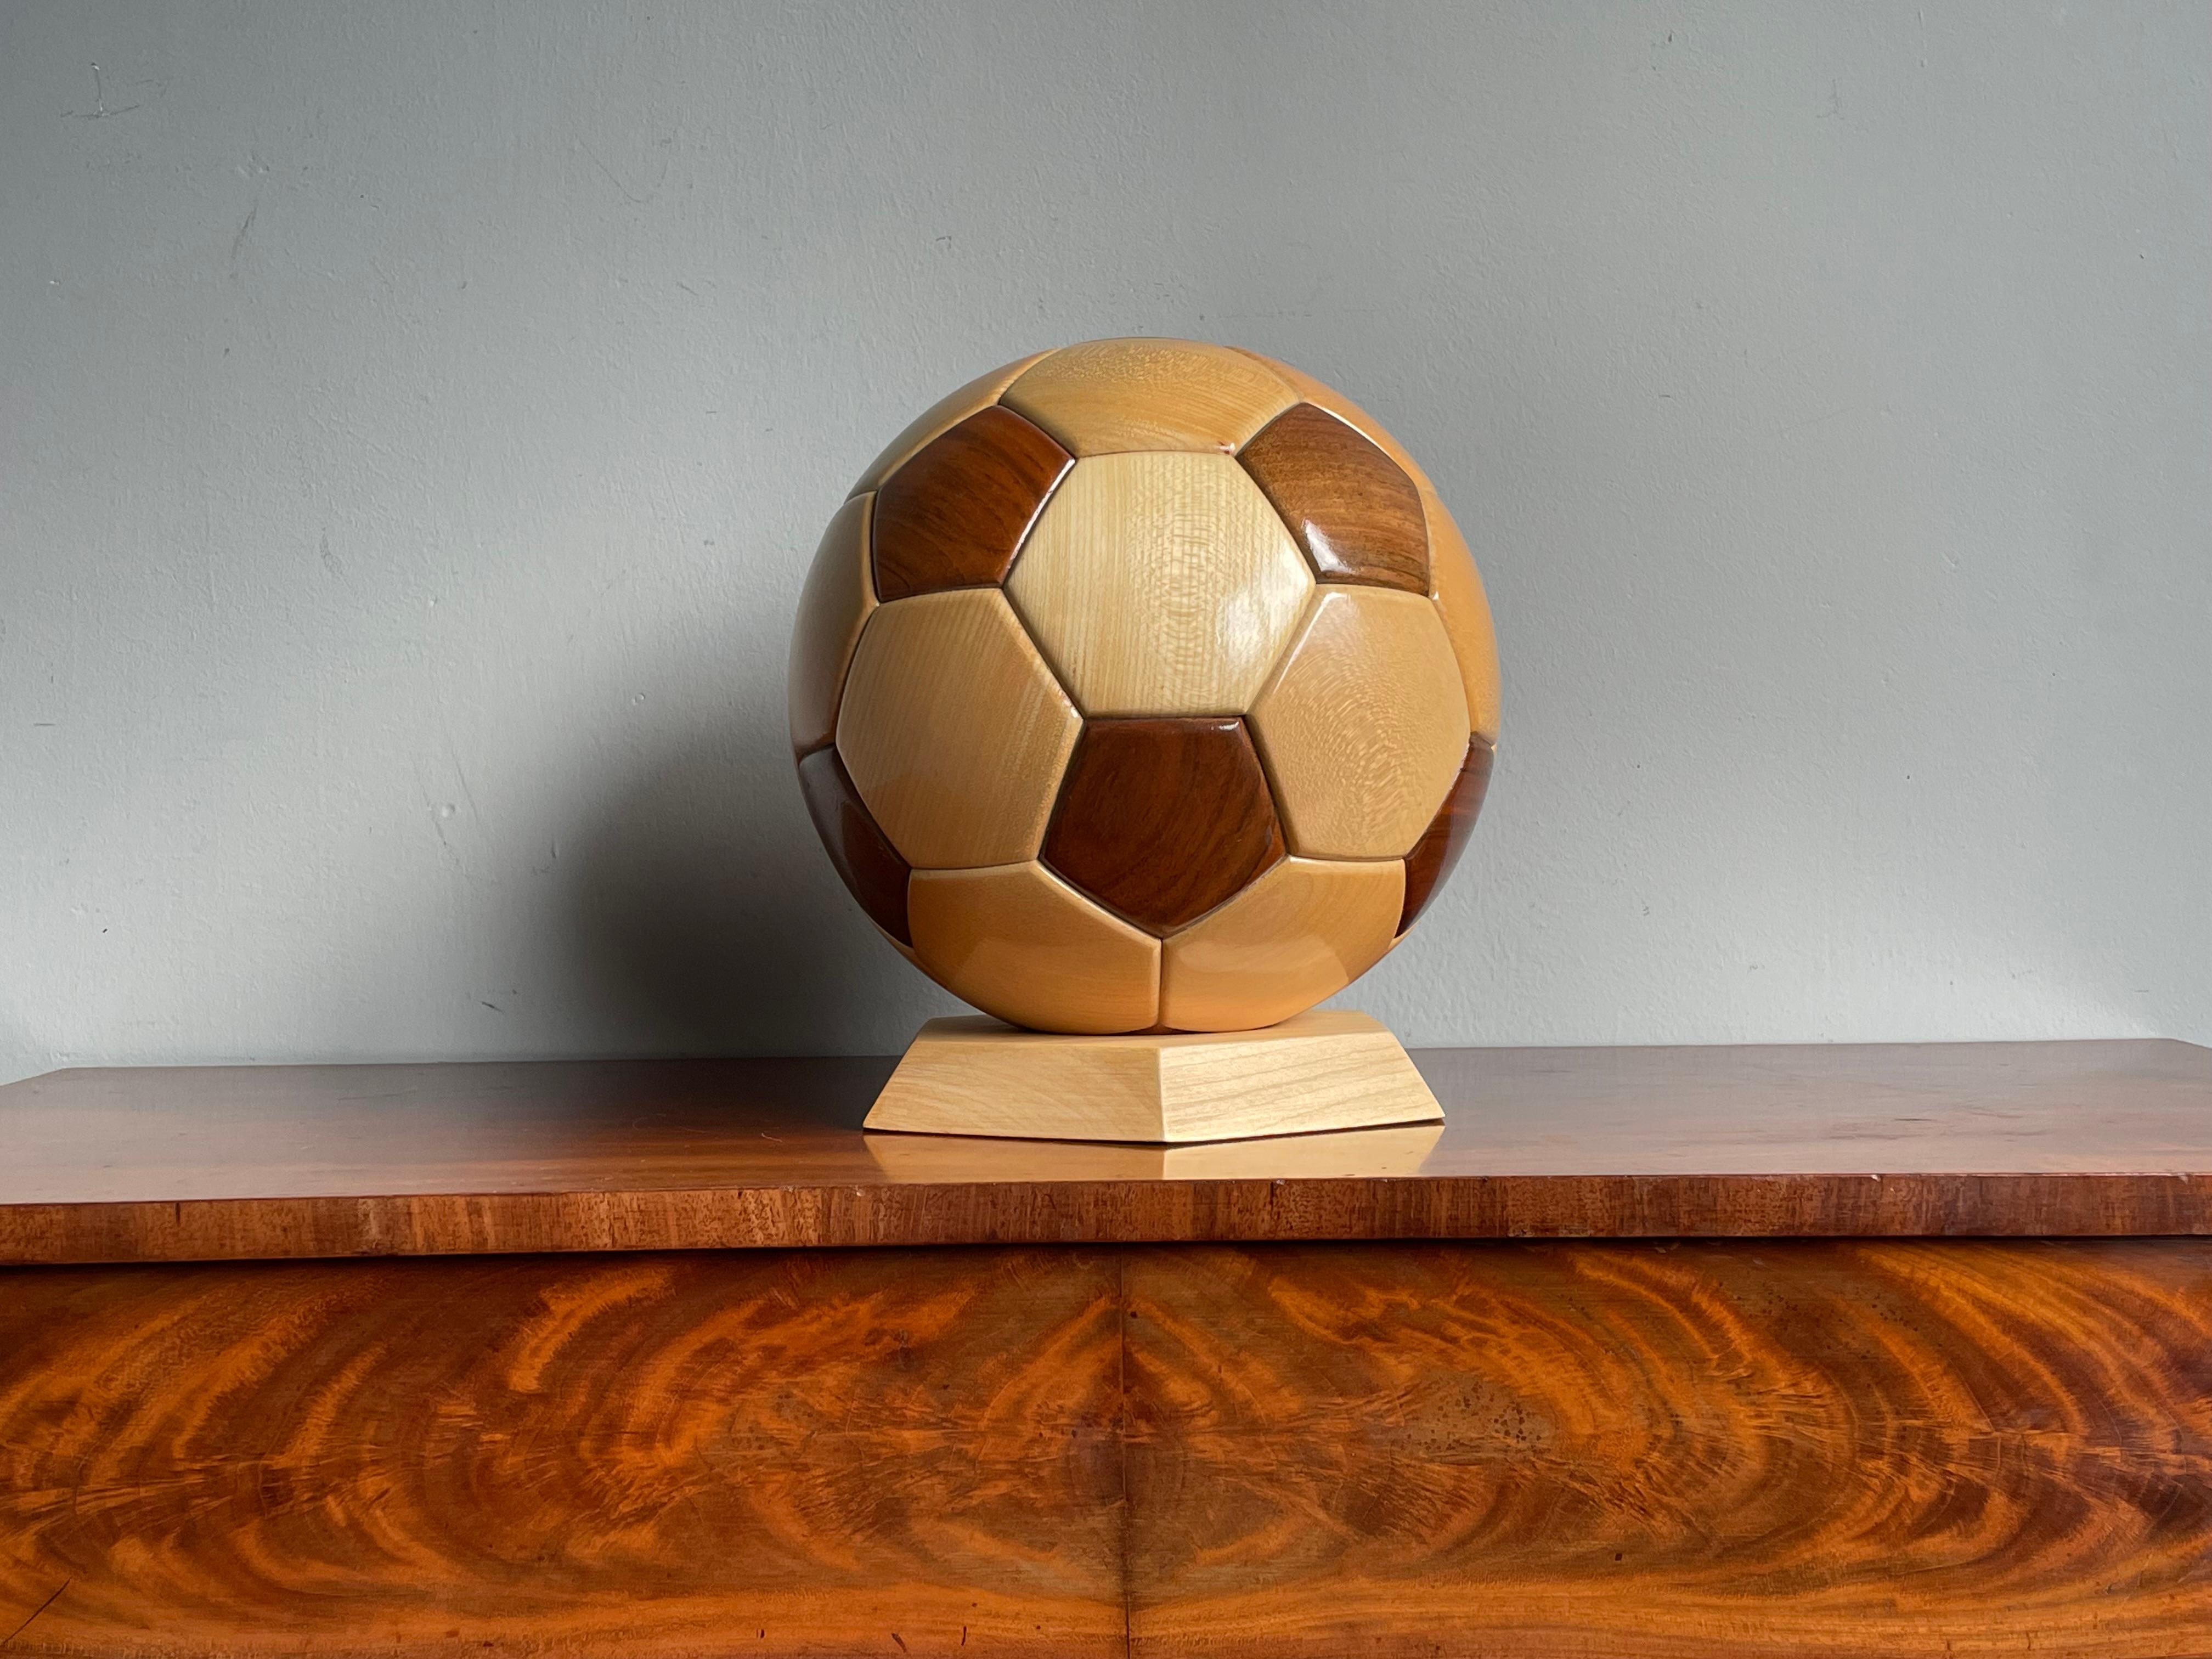 Handgefertigter und perfekt realistischer Holzfußball auf sechseckigem Sockel.

Diese seltene und schön gemacht Fußball ist in fast neuwertigen Zustand und es ist in fast der gleichen Größe wie die, mit denen sie in Profi-Fußball spielen gemacht.